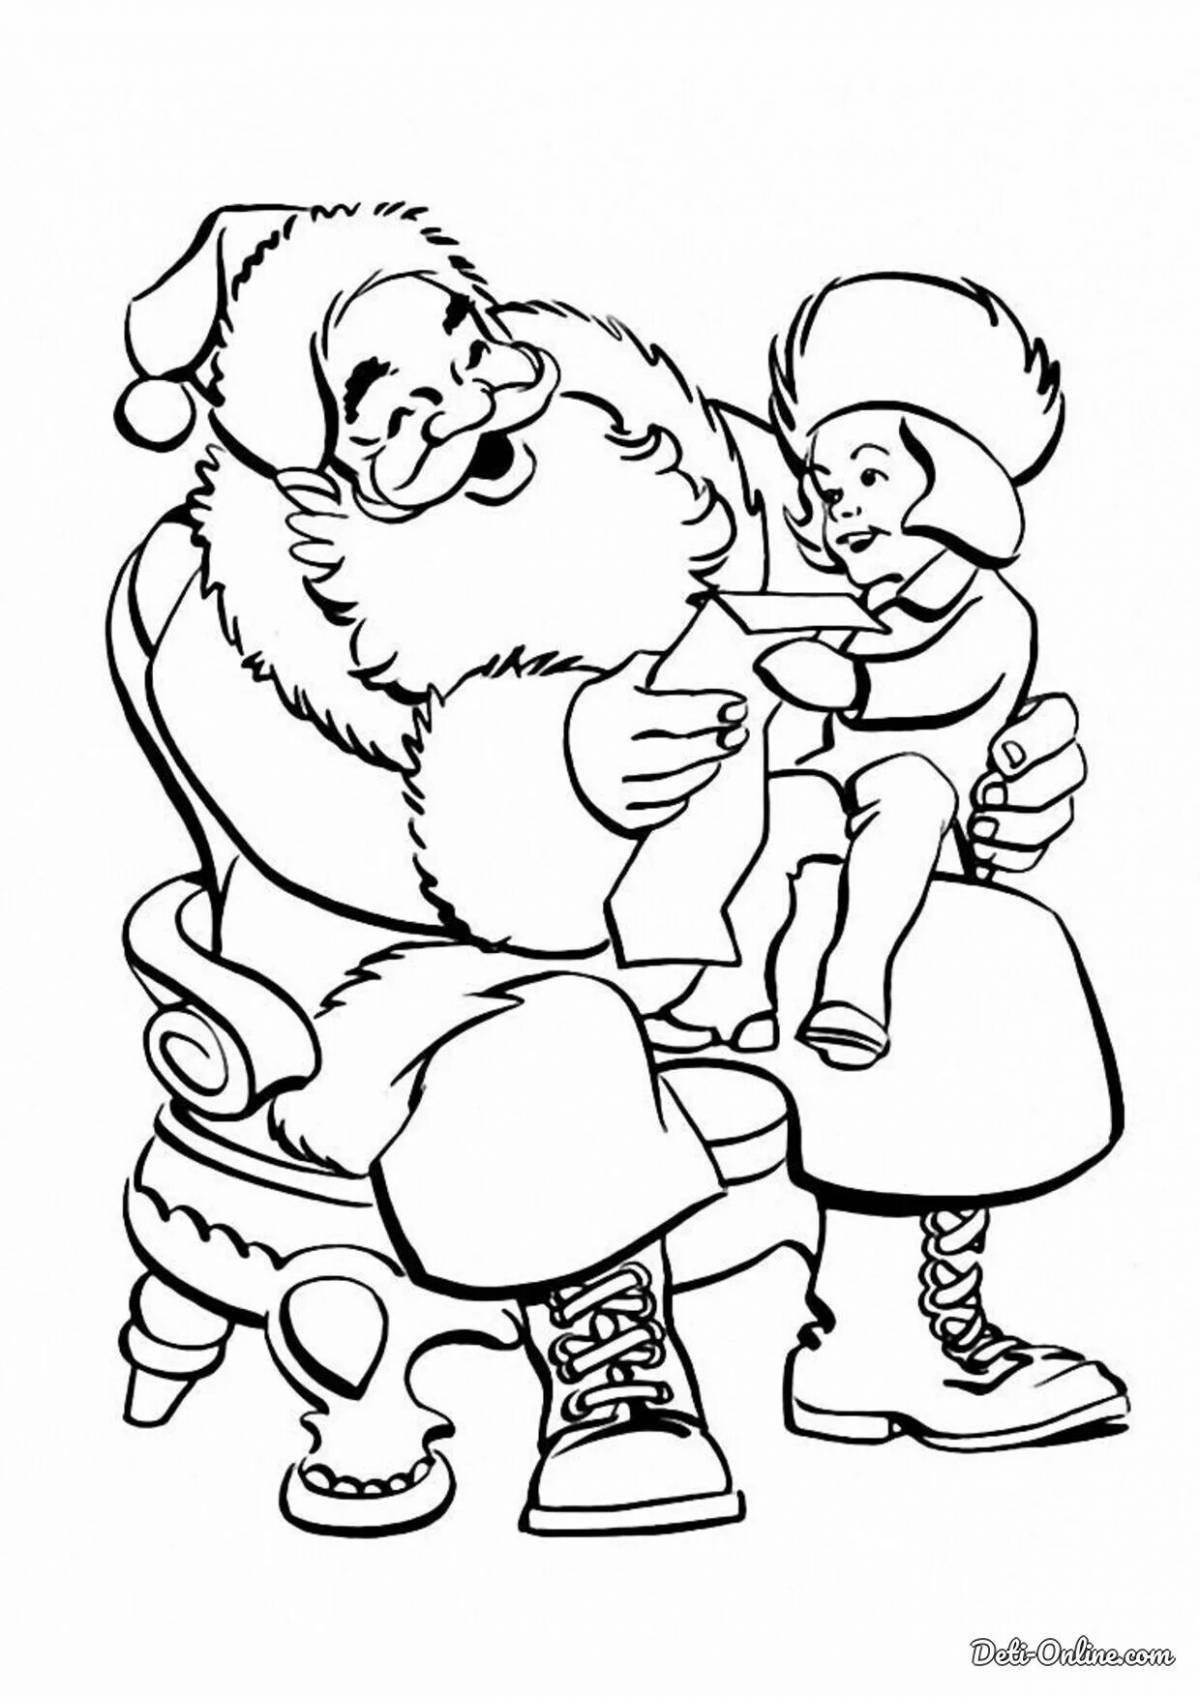 Coloring page cheerful santa claus